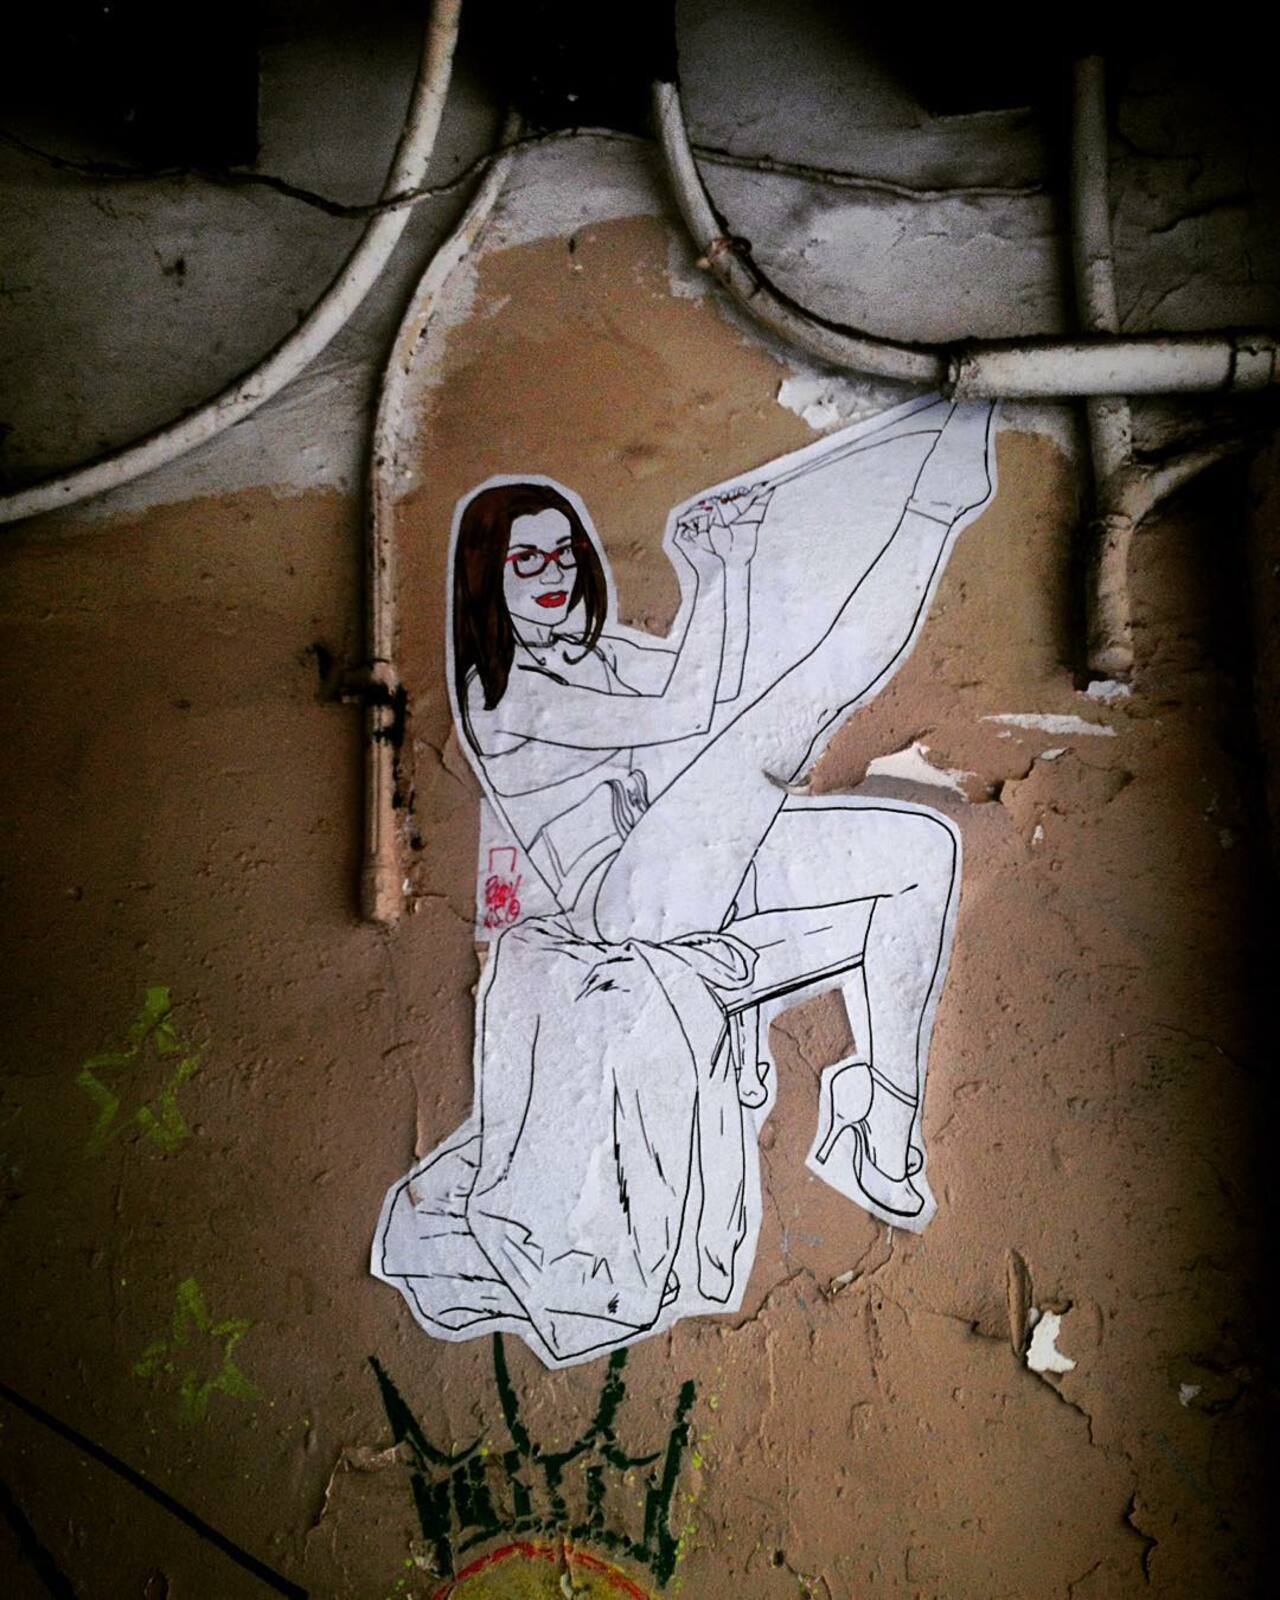 #Paris #graffiti photo by @mh2p_ http://ift.tt/1QMdTKN #StreetArt https://t.co/F3IRioiPdS